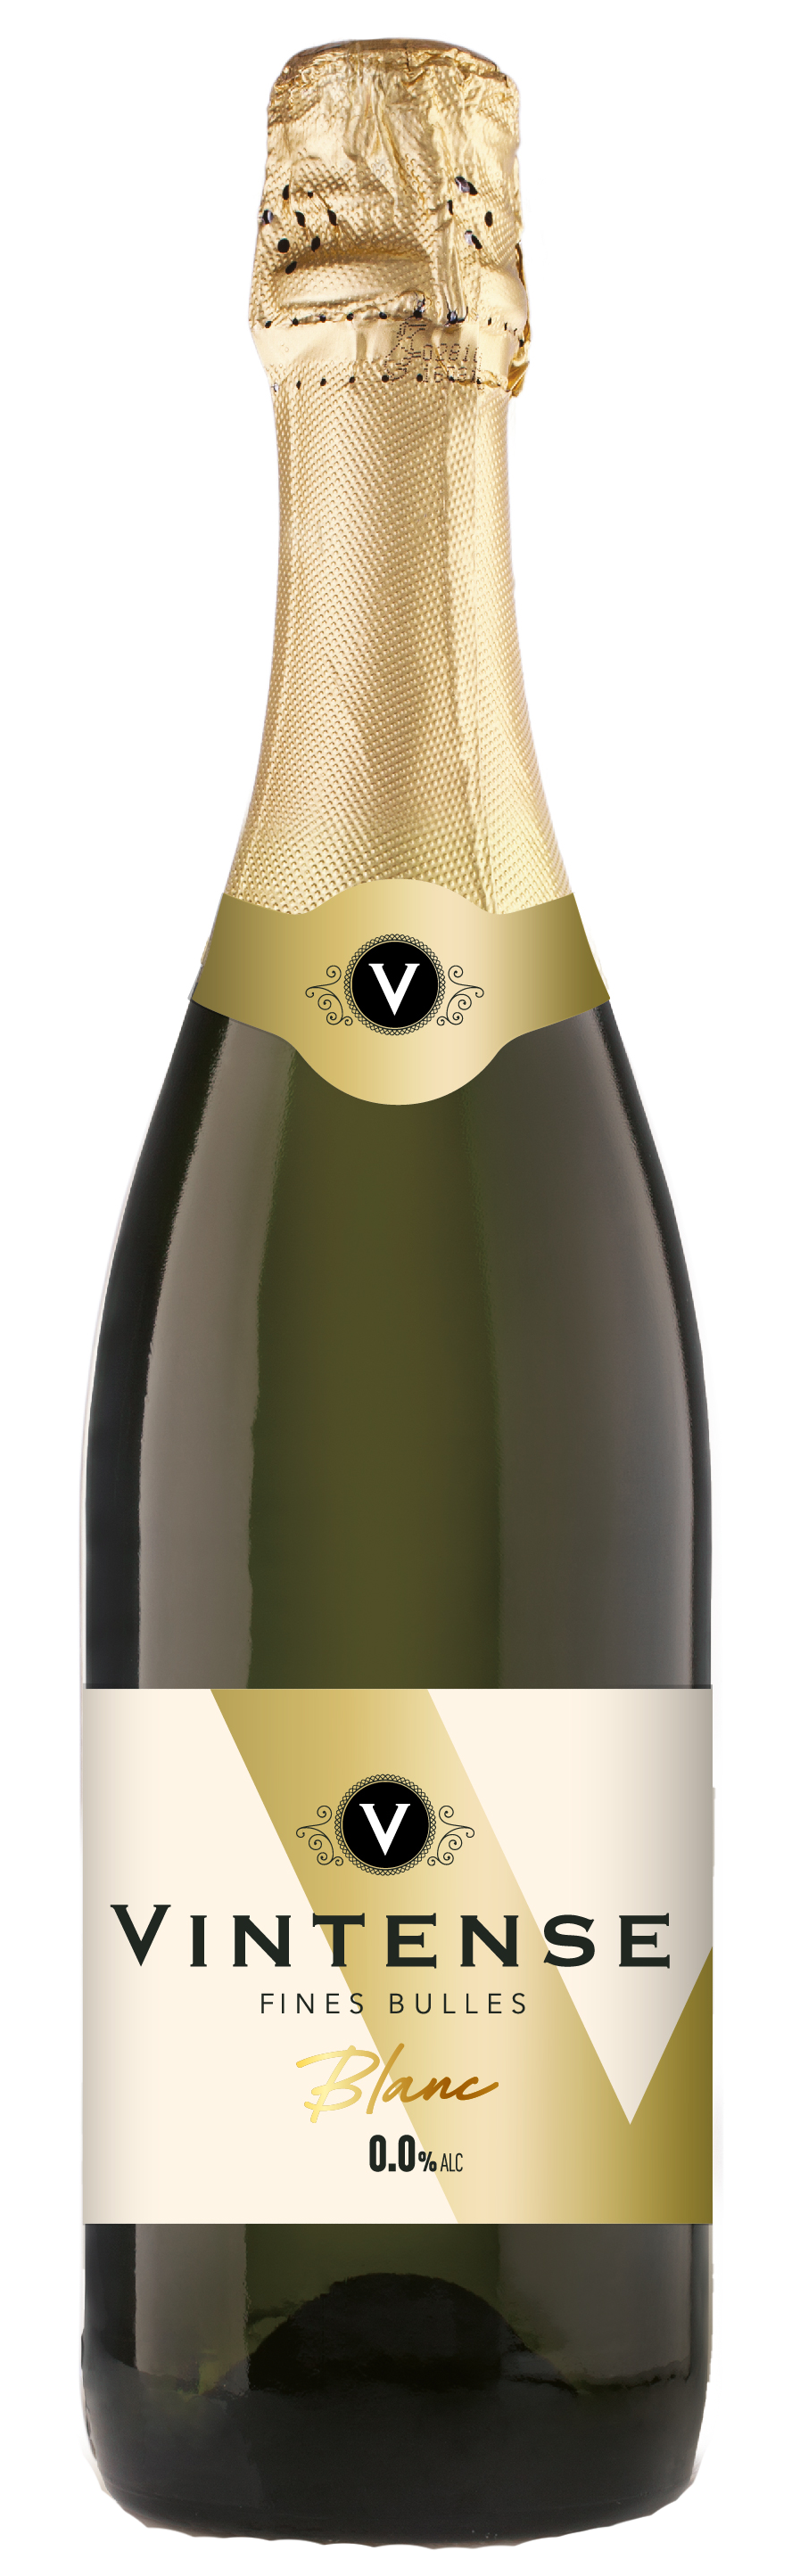 Вино игристое белое сухое безалкогольное VINTENSE FINES BULLES BLANC, Бельгия, 0,75 л.